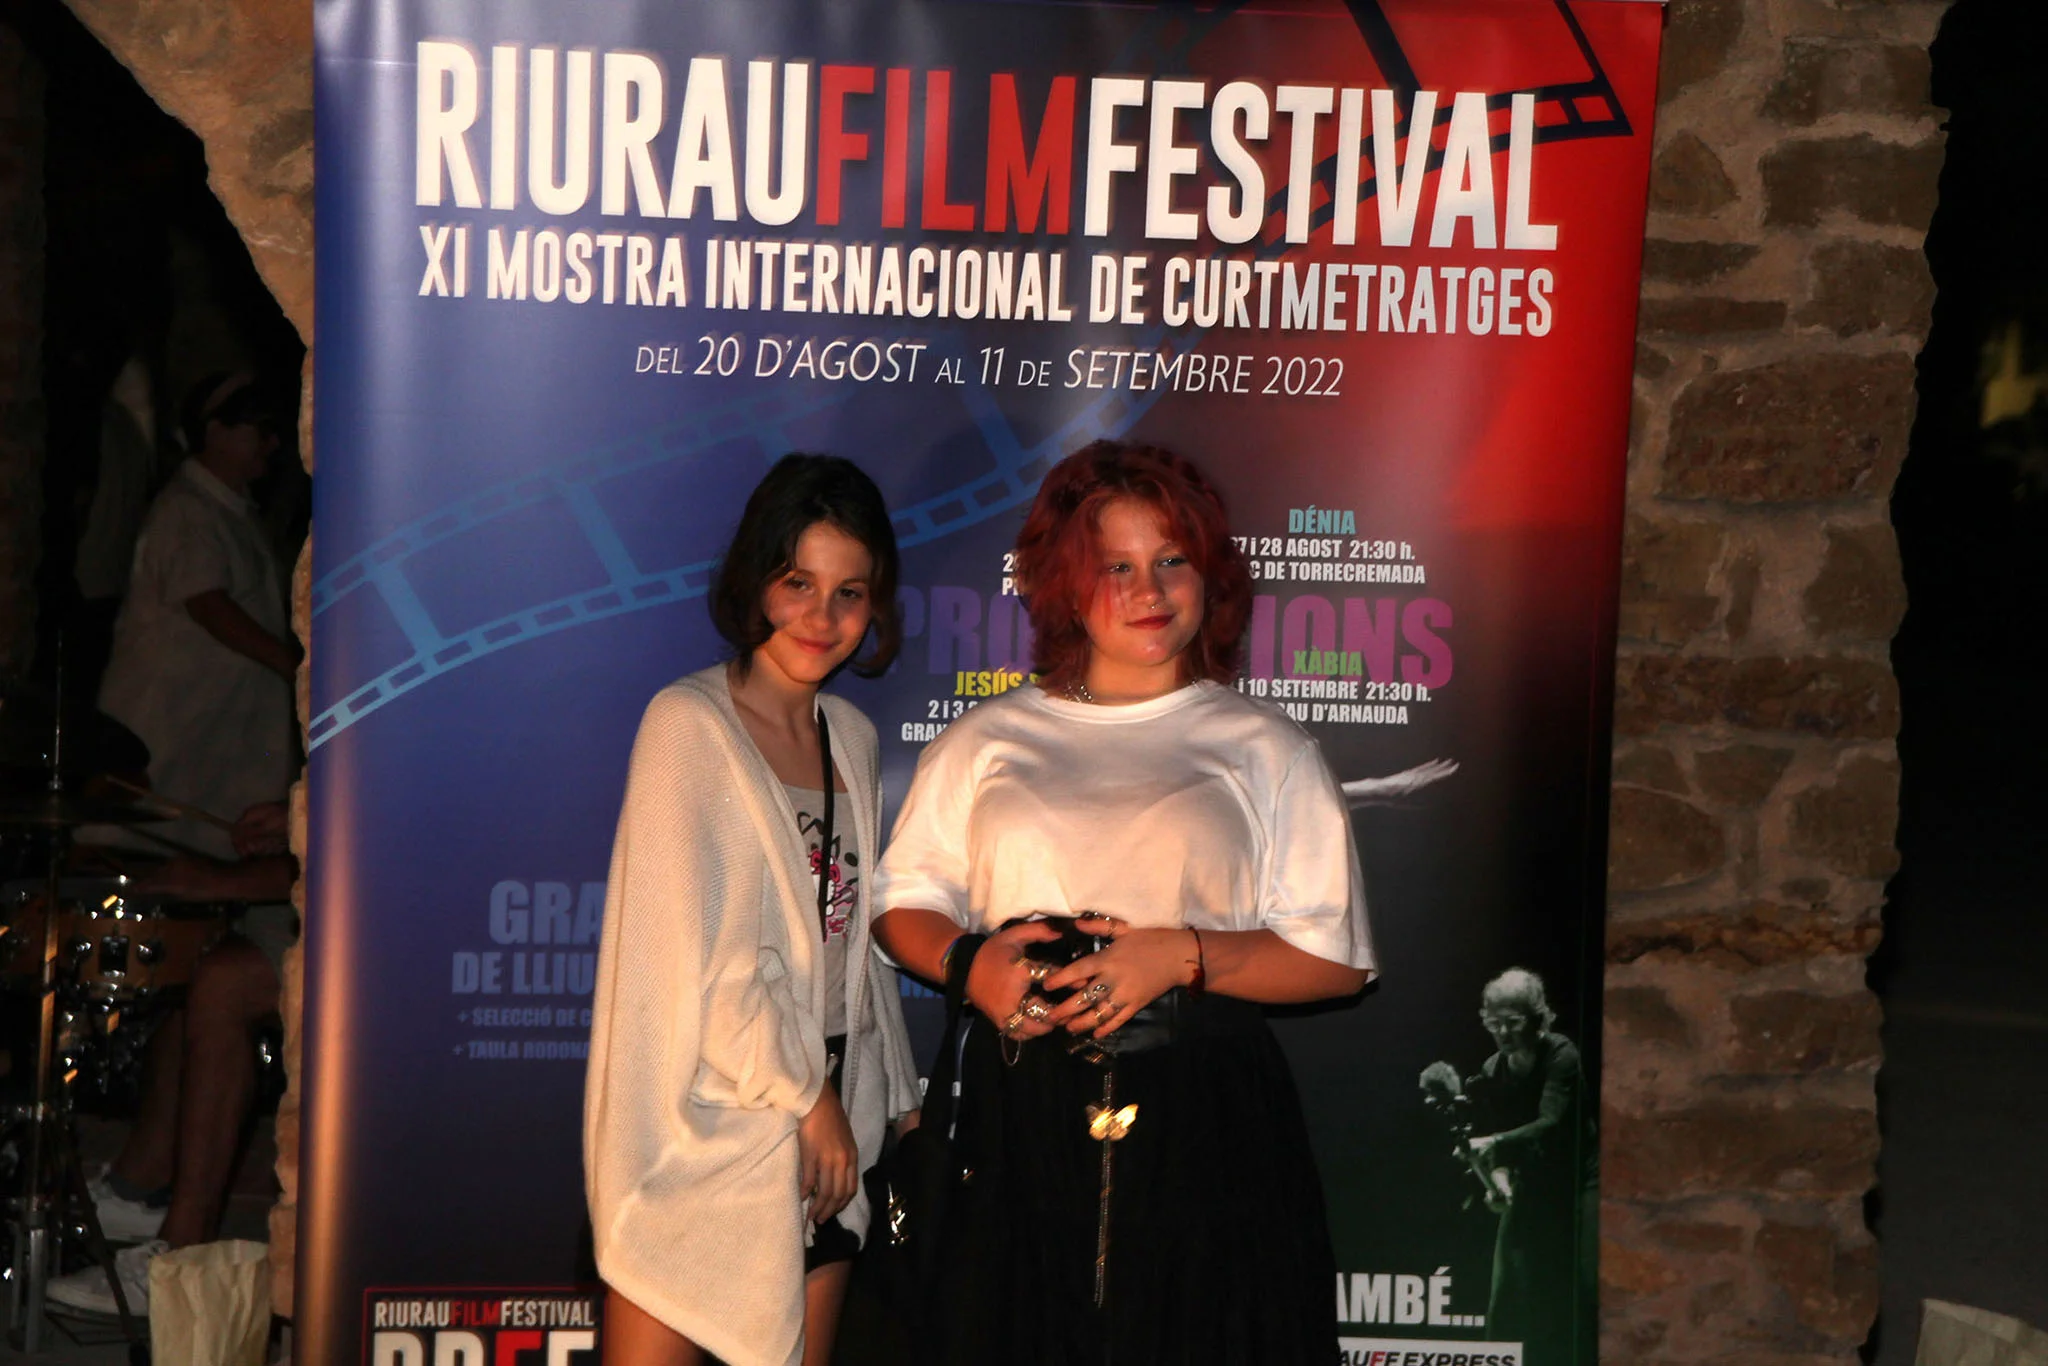 RiuRau Film Festival en Jesús Pobre23